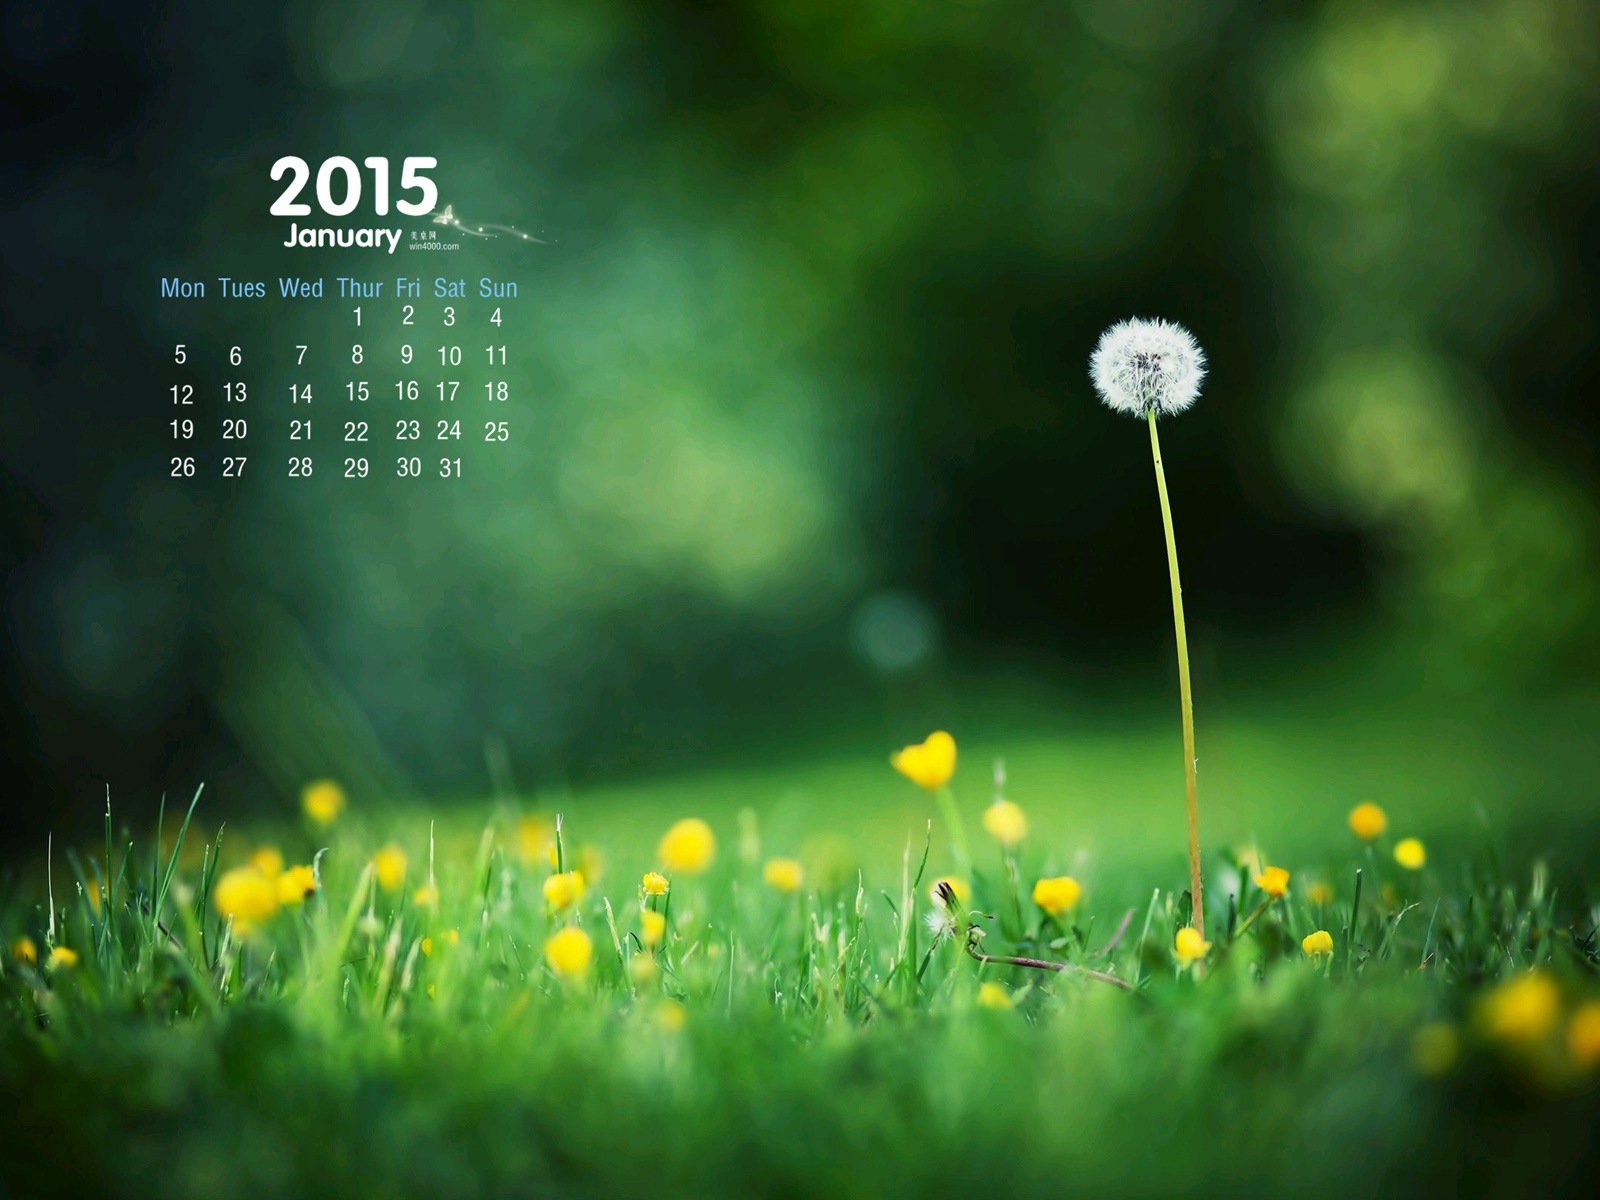 01 2015 fondos de escritorio calendario (1) #15 - 1600x1200